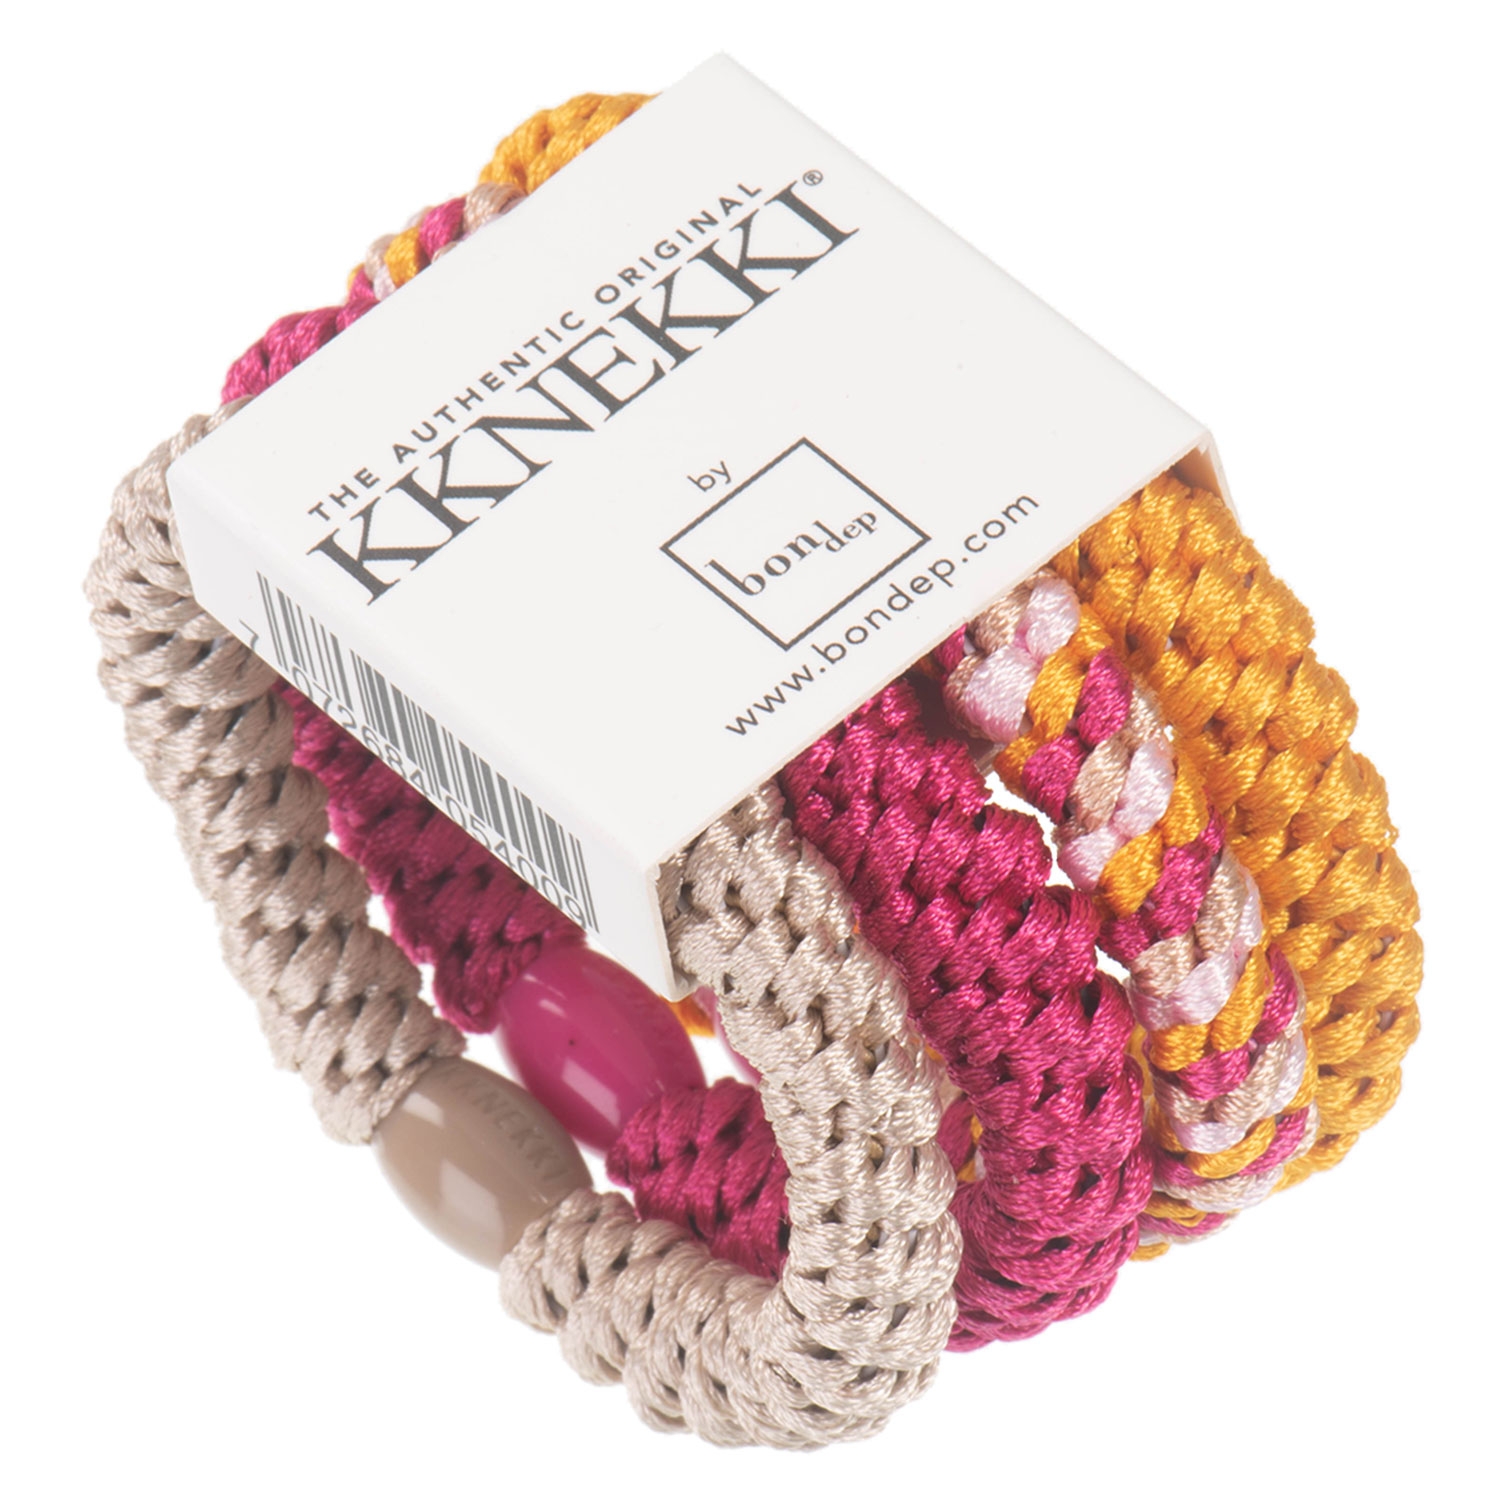 Produktbild von Kknekki - Hair Tie Tropical